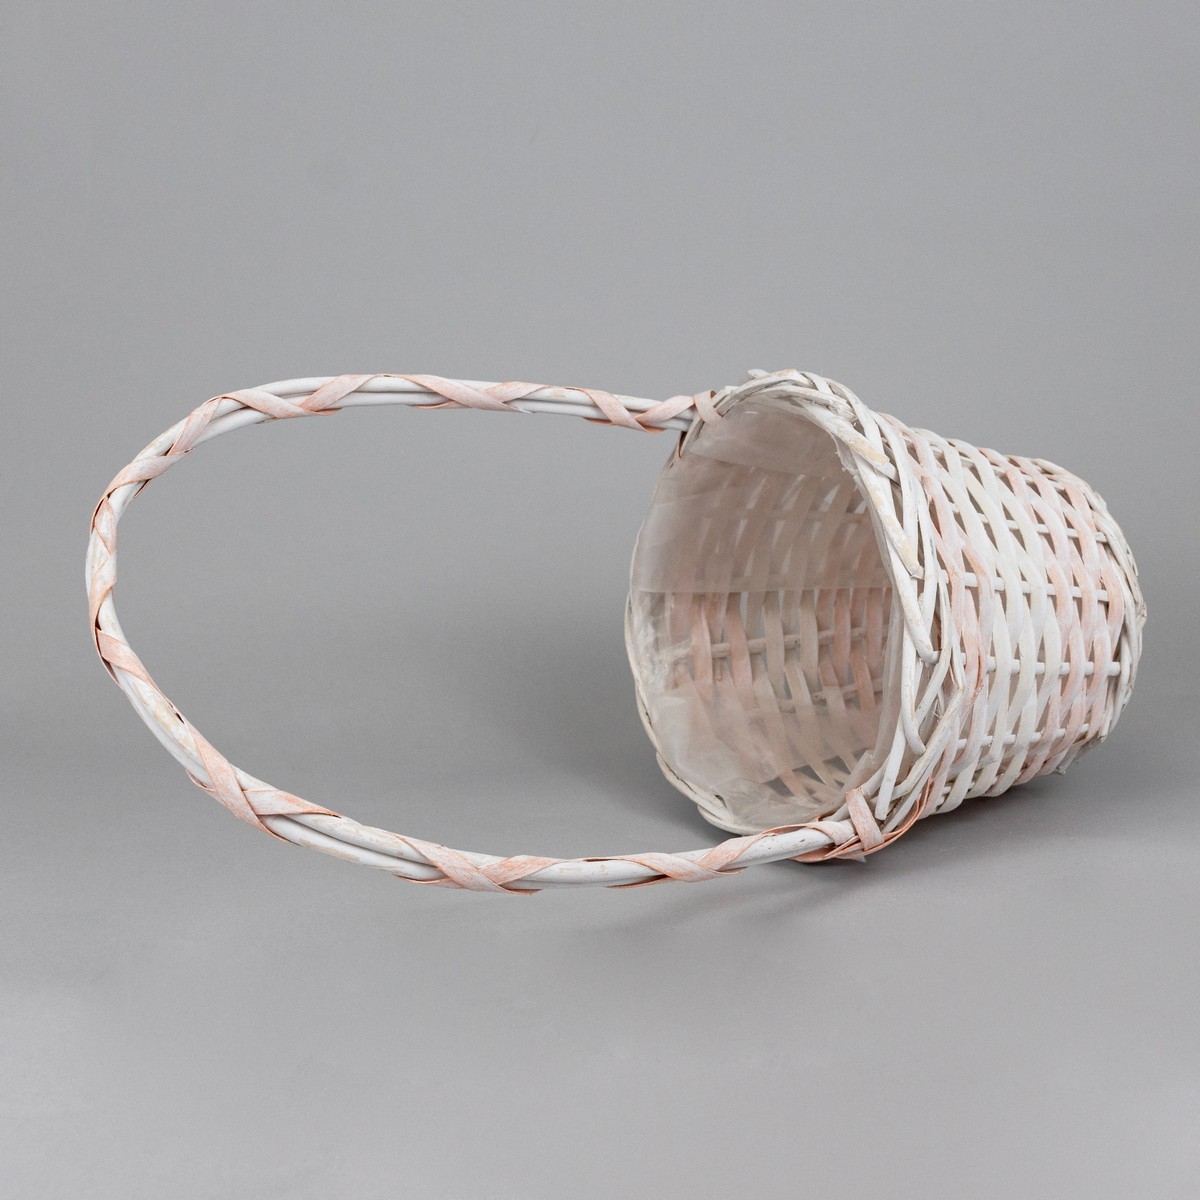 Набор корзин Азалия Декор плетеных из прутьев ивы 2шт D20x16xH43см цвет белый и персиковый - фото 8